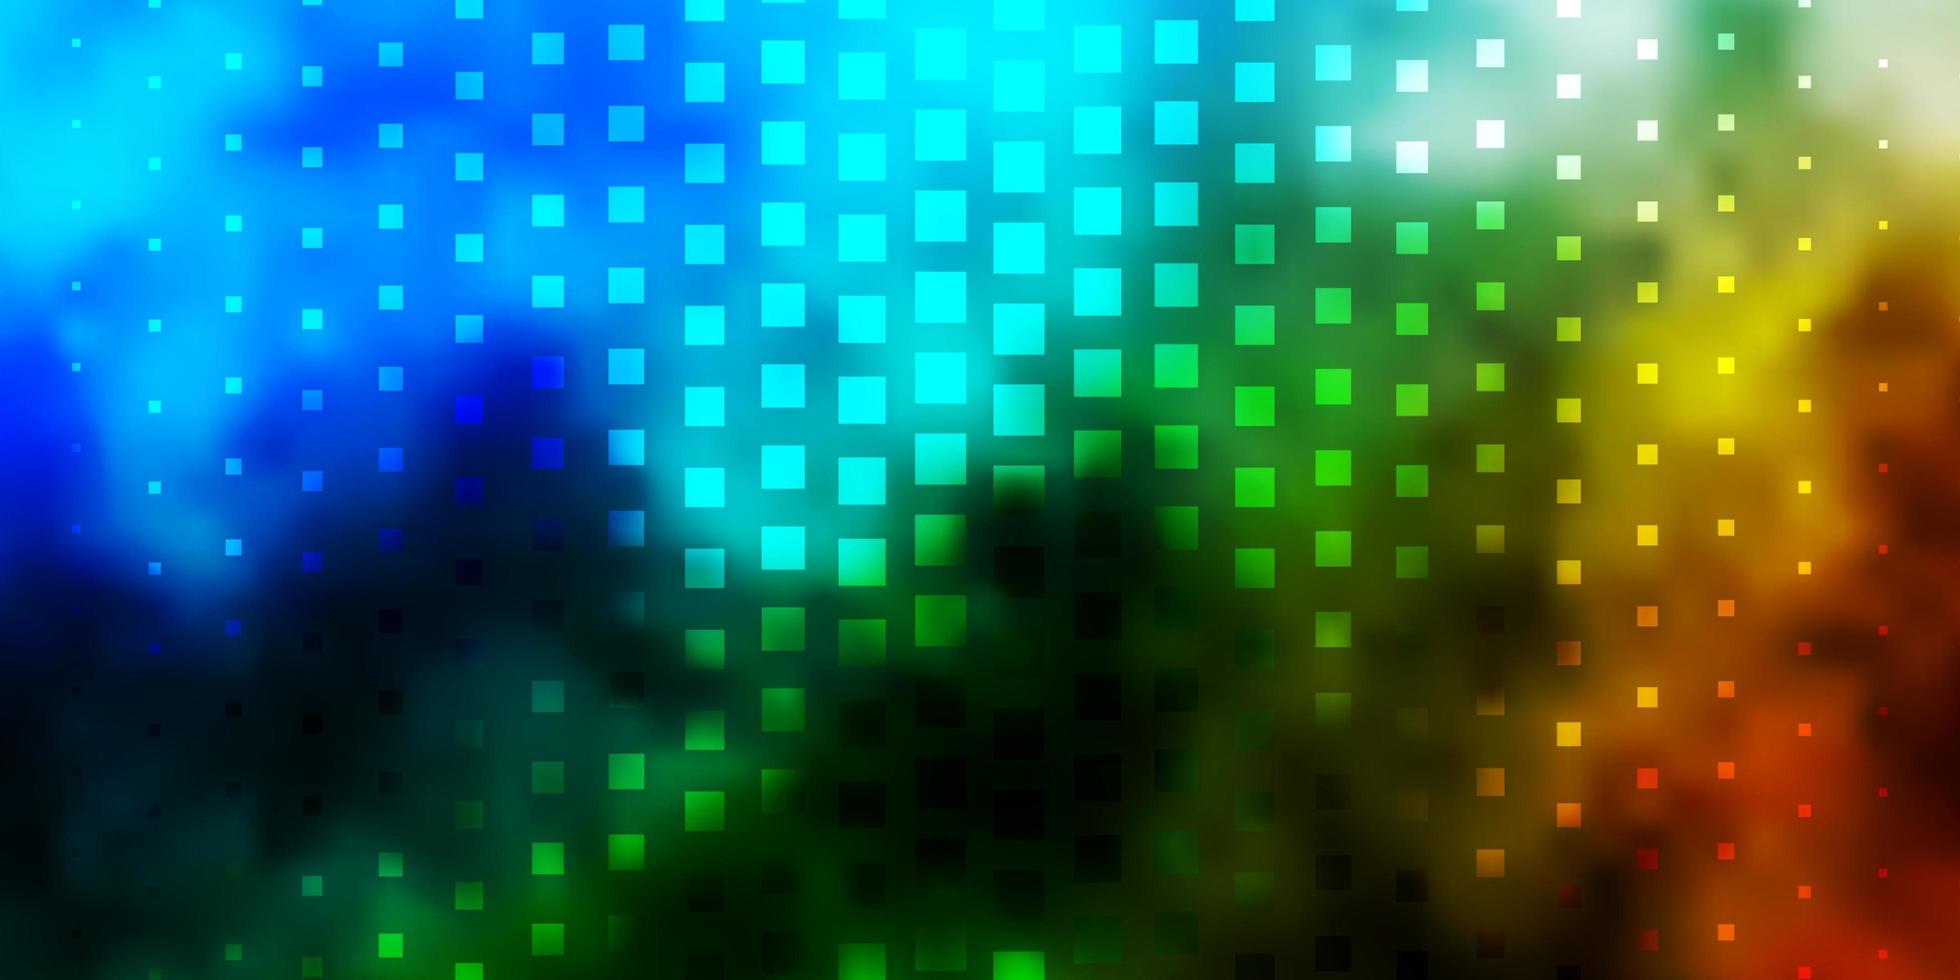 ljusblå, grön vektormall med rektanglar. vektor